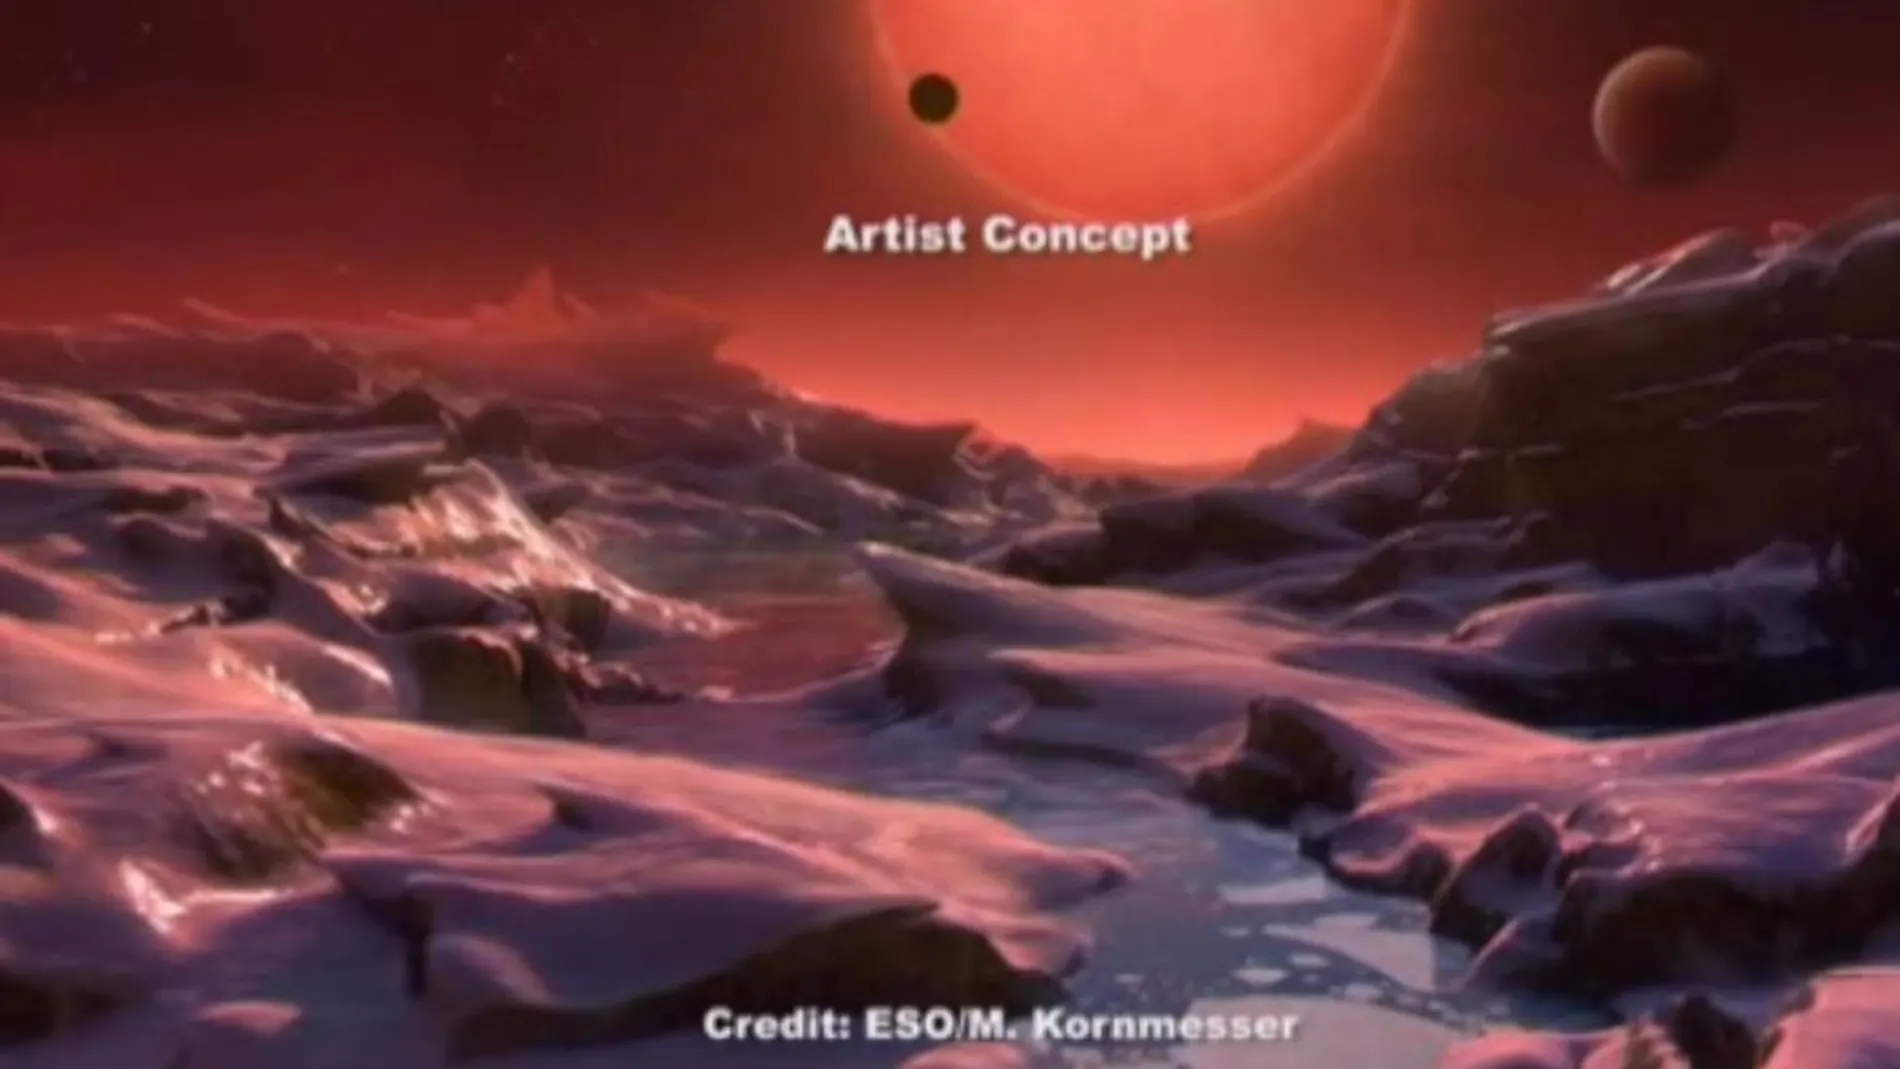 Dos de los exoplanetas recientemente descubiertos son rocosos como la Tierra